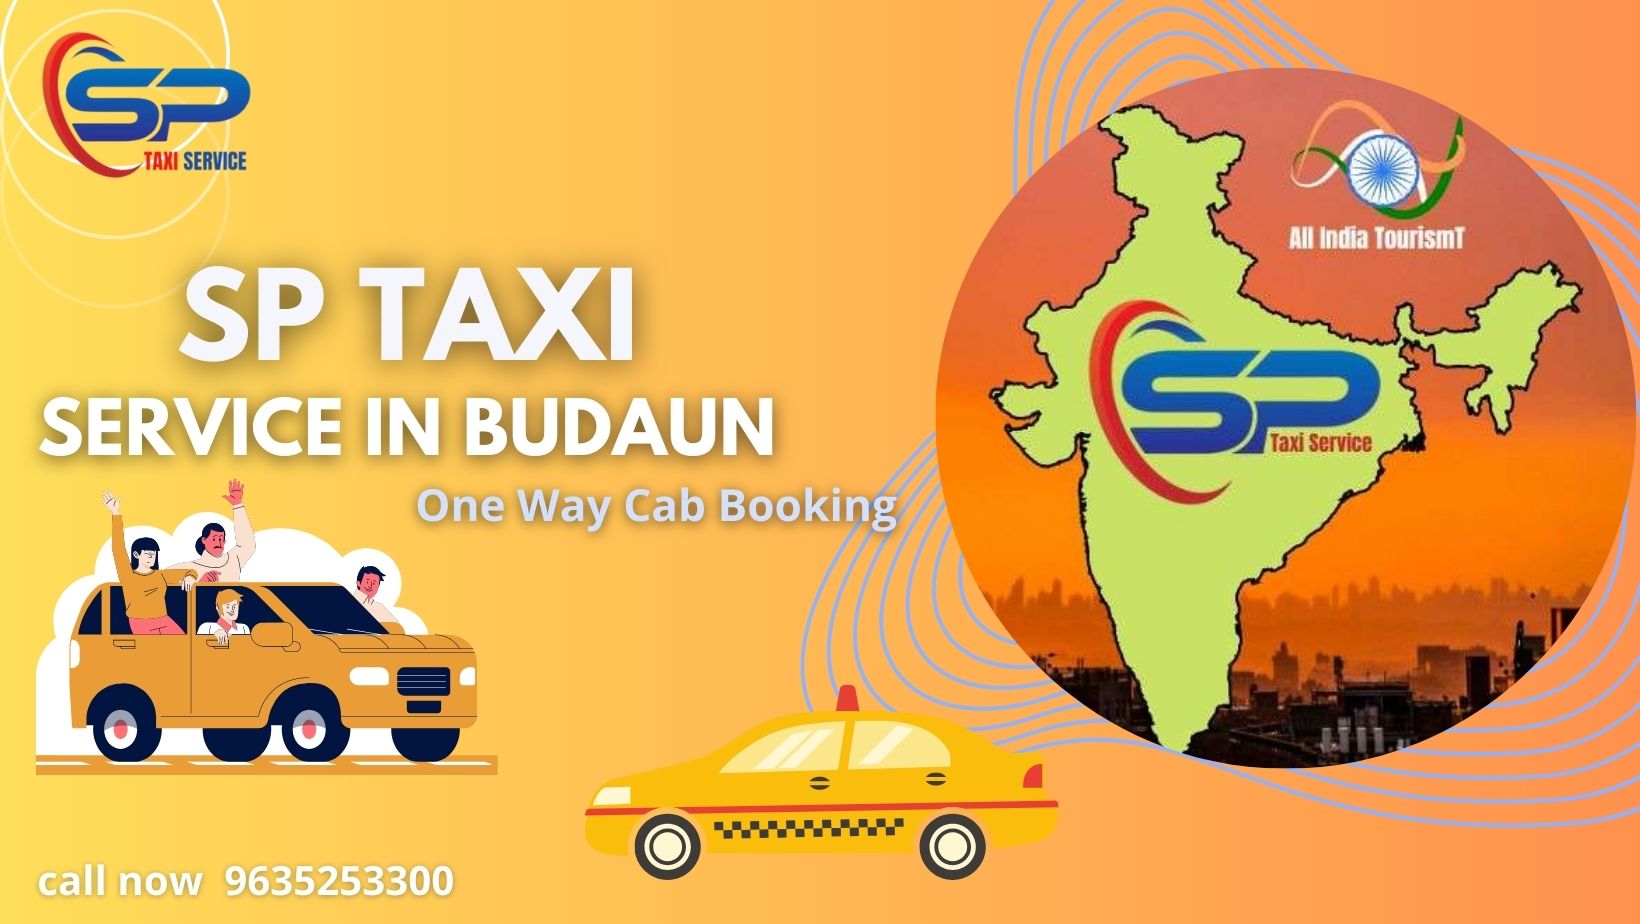 Budaun Taxi service